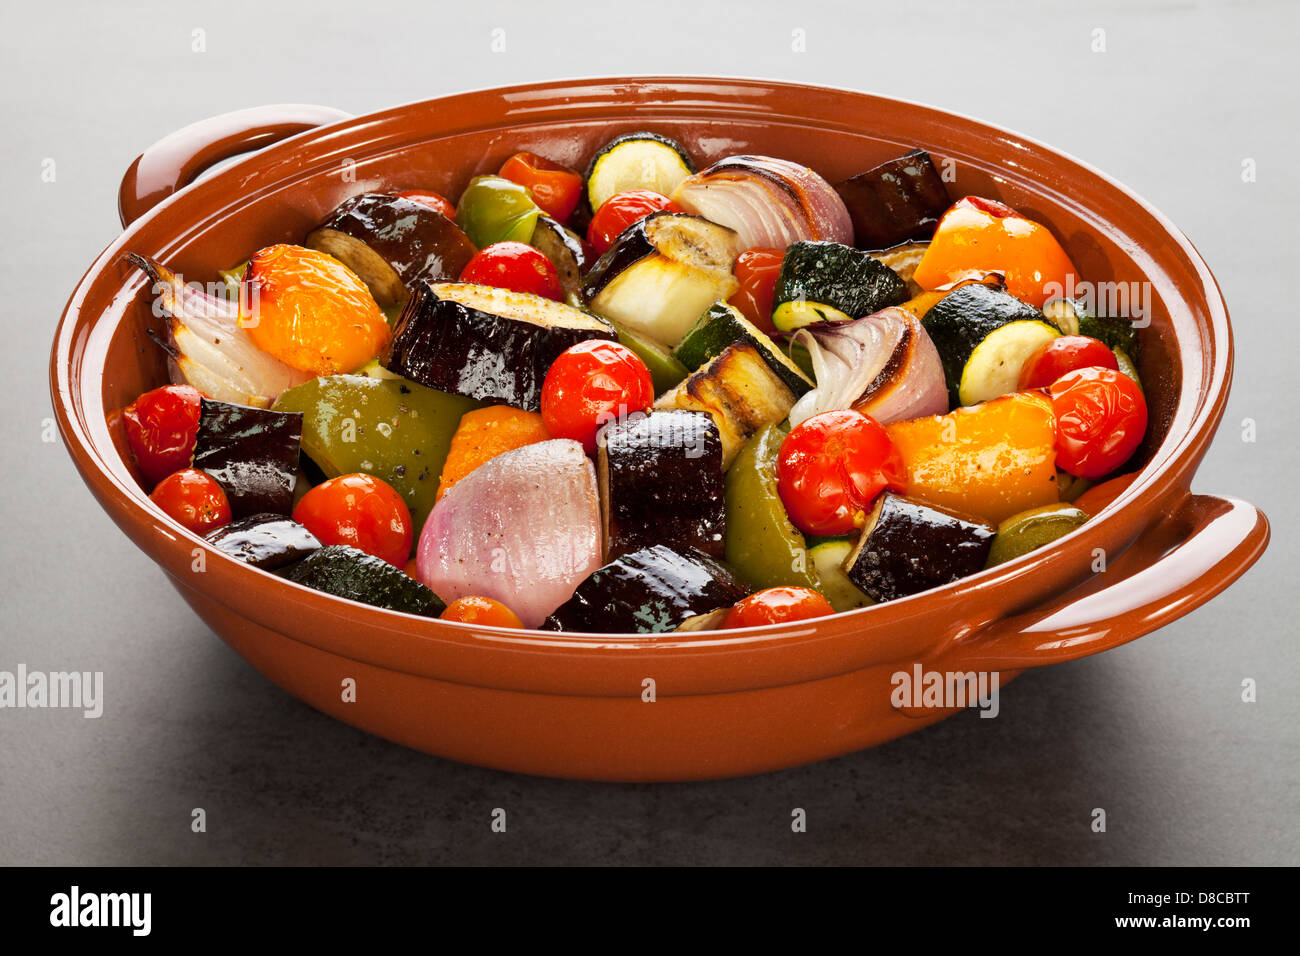 La ratatouille de légumes grillés - un plat en terre cuite rempli de Méditerranée cuit au four... Banque D'Images